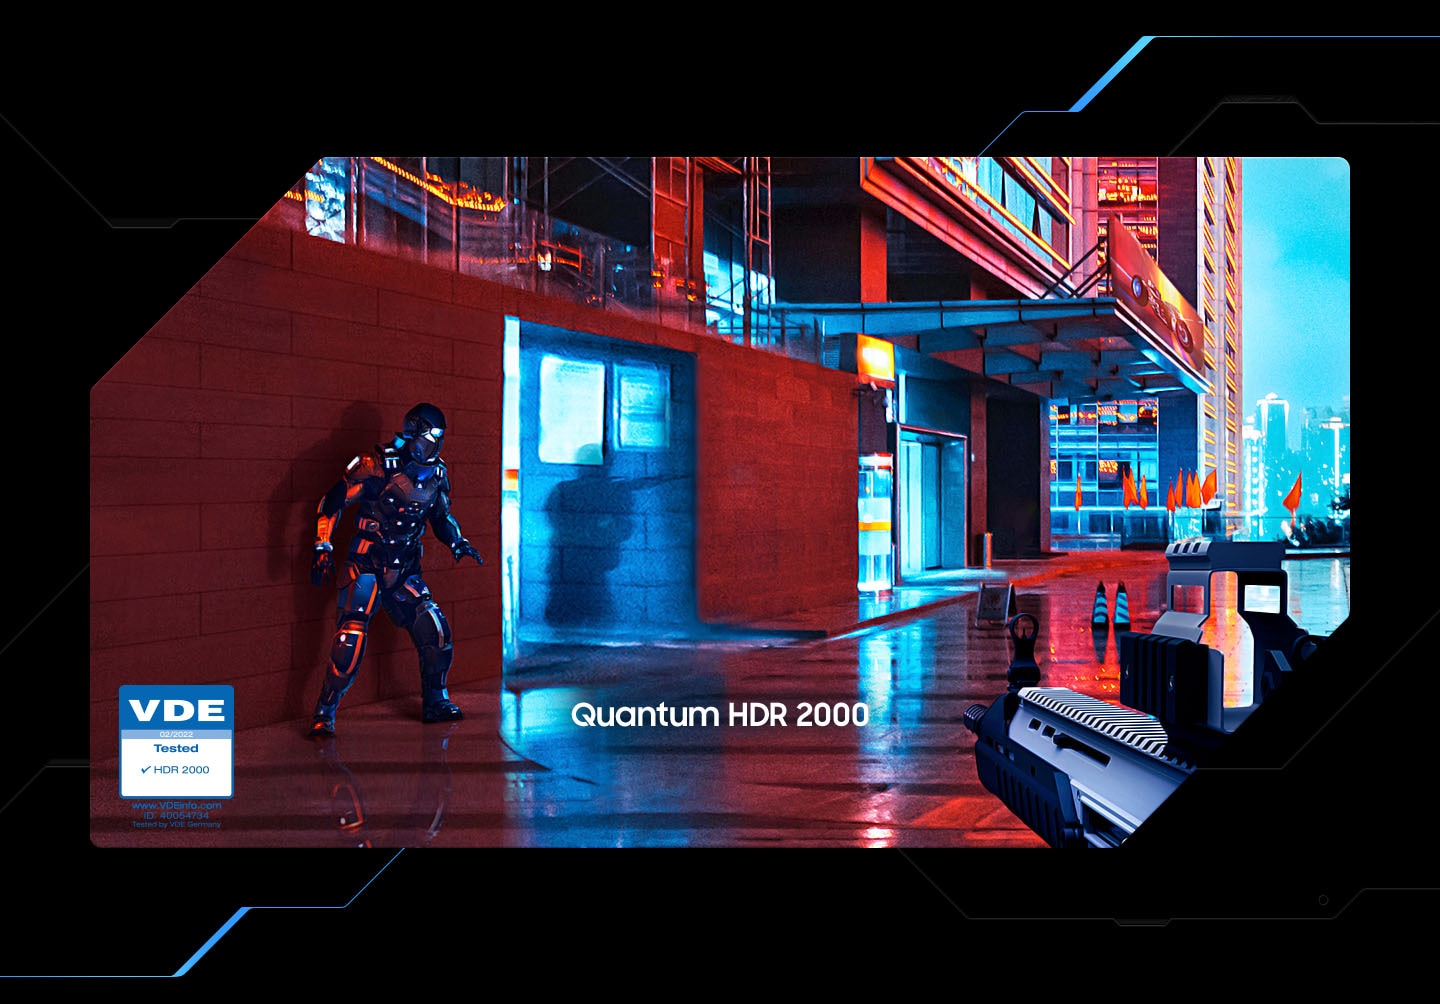 Videoposnetek prikazuje igro streljanja z barvami ""Konvencionalne"" z značko VDE, ki je prikazana v levem kotu. Dve vrstici črno-belega in barvnega postaneta daljši in bolj izpopolnjeni, ko se spremeni iz običajnega v HDR. Sovražnikova senca postane bolj jasna iz scene igre s ""Quantum HDR2000"".